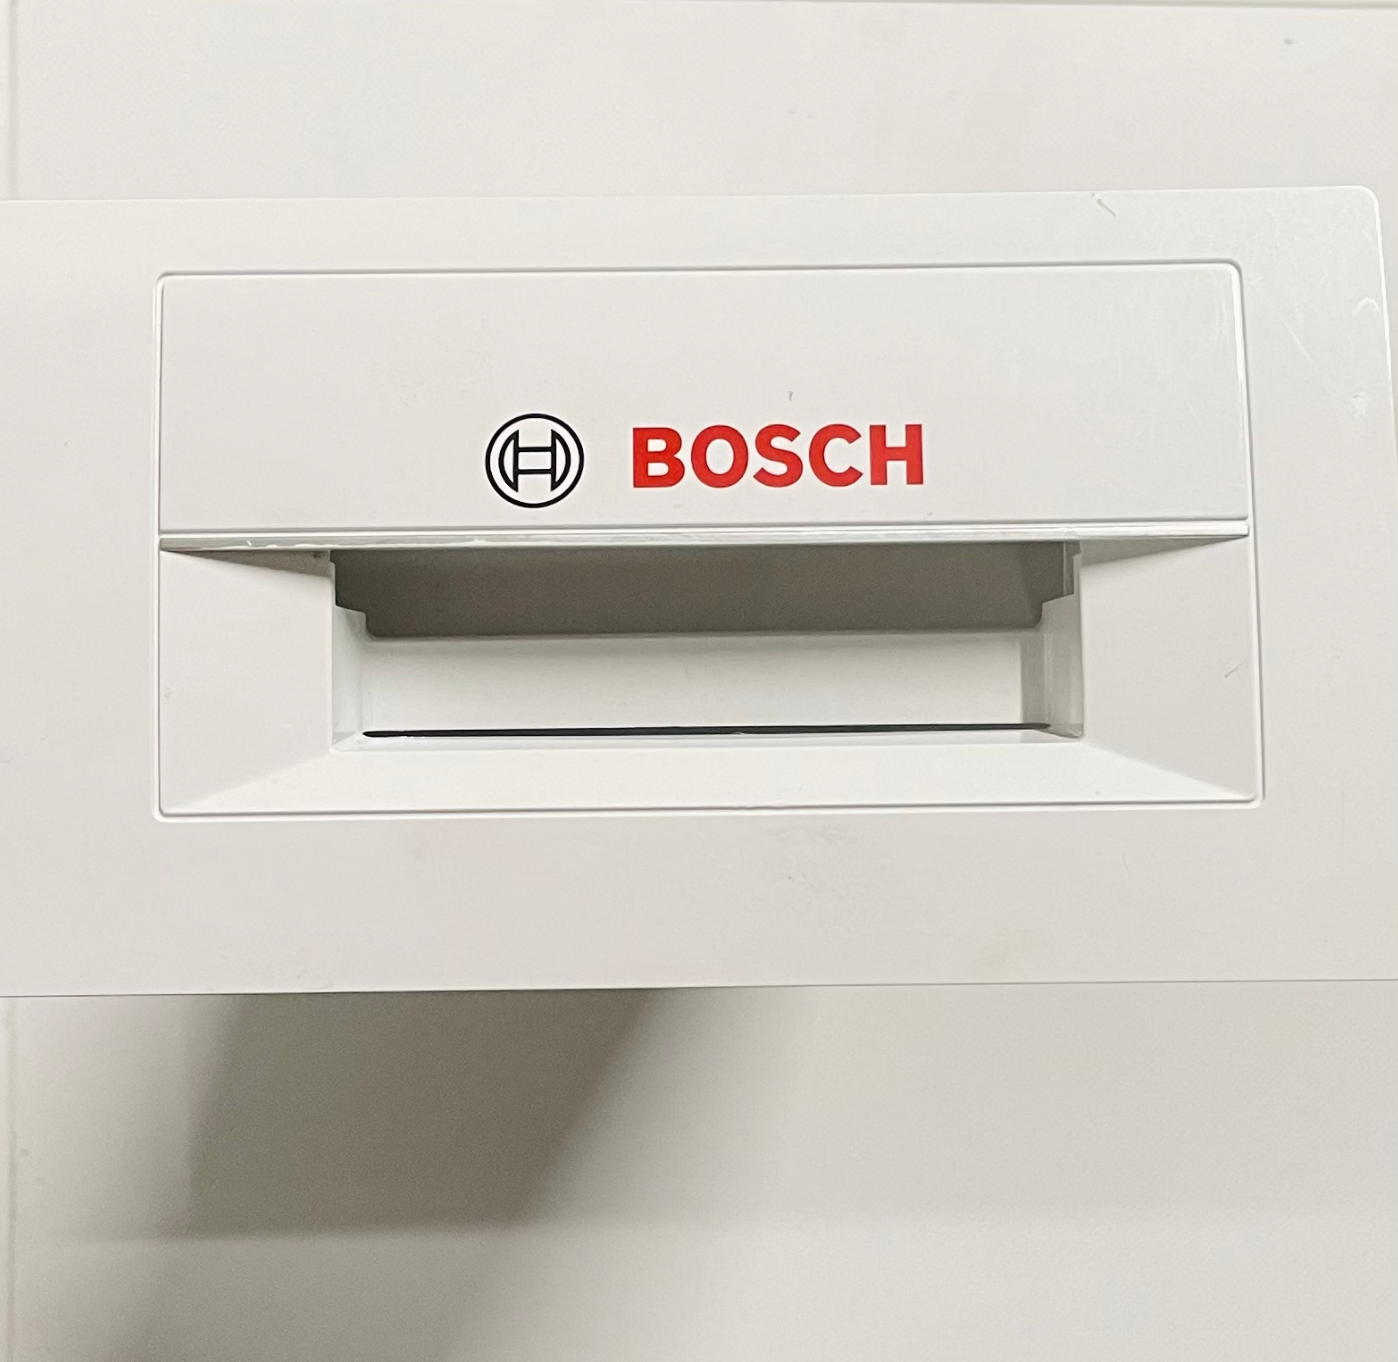 Vanntank/kondensbeholder sett til Bosch Siemens tørketrommel